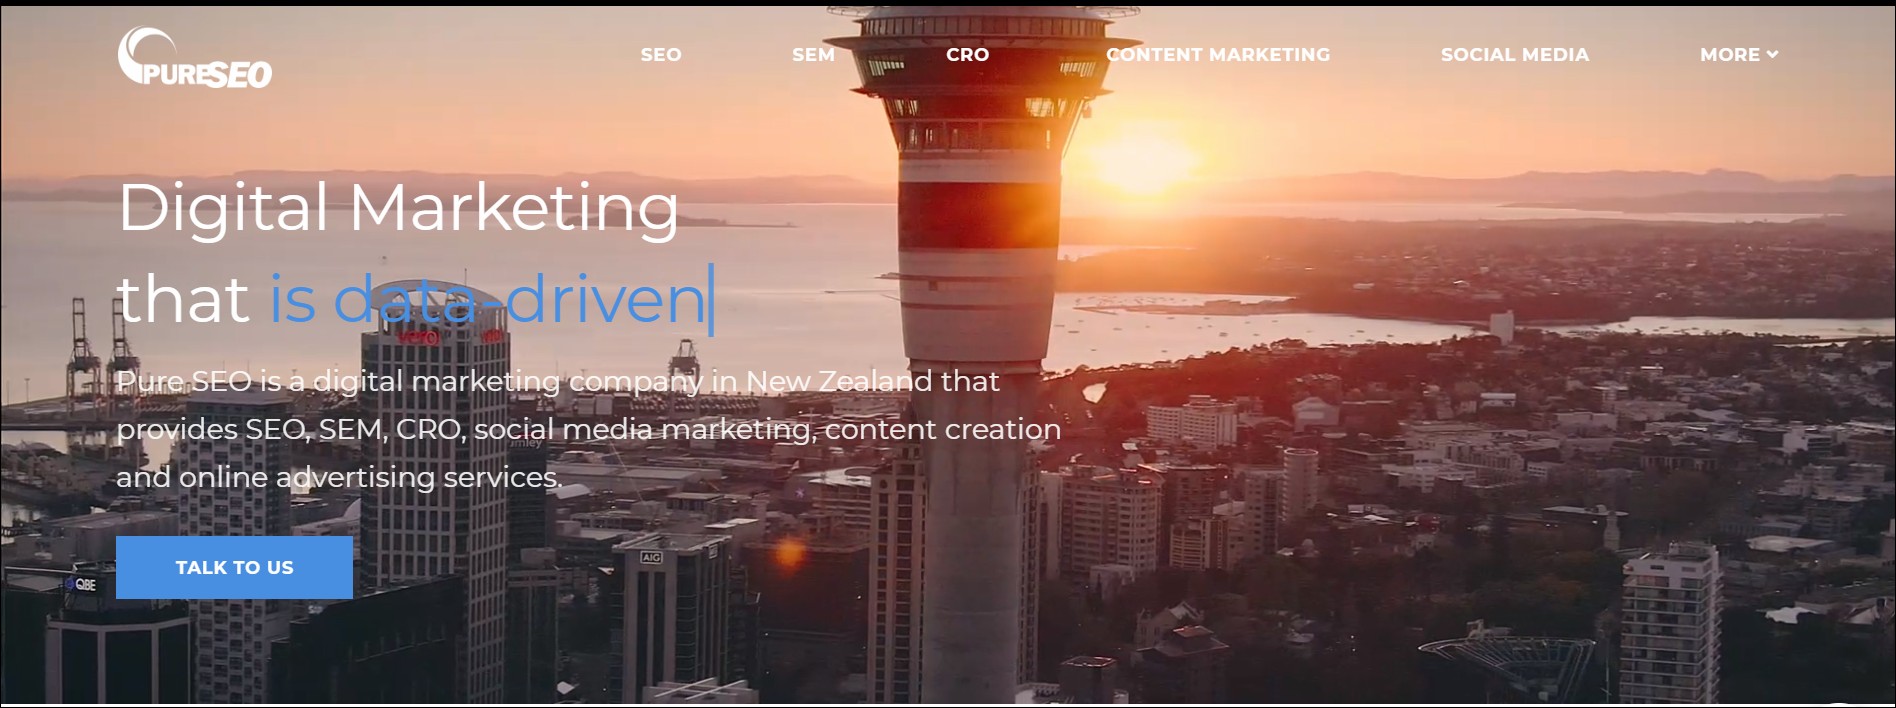 Content Marketing Agencies in New Zealand